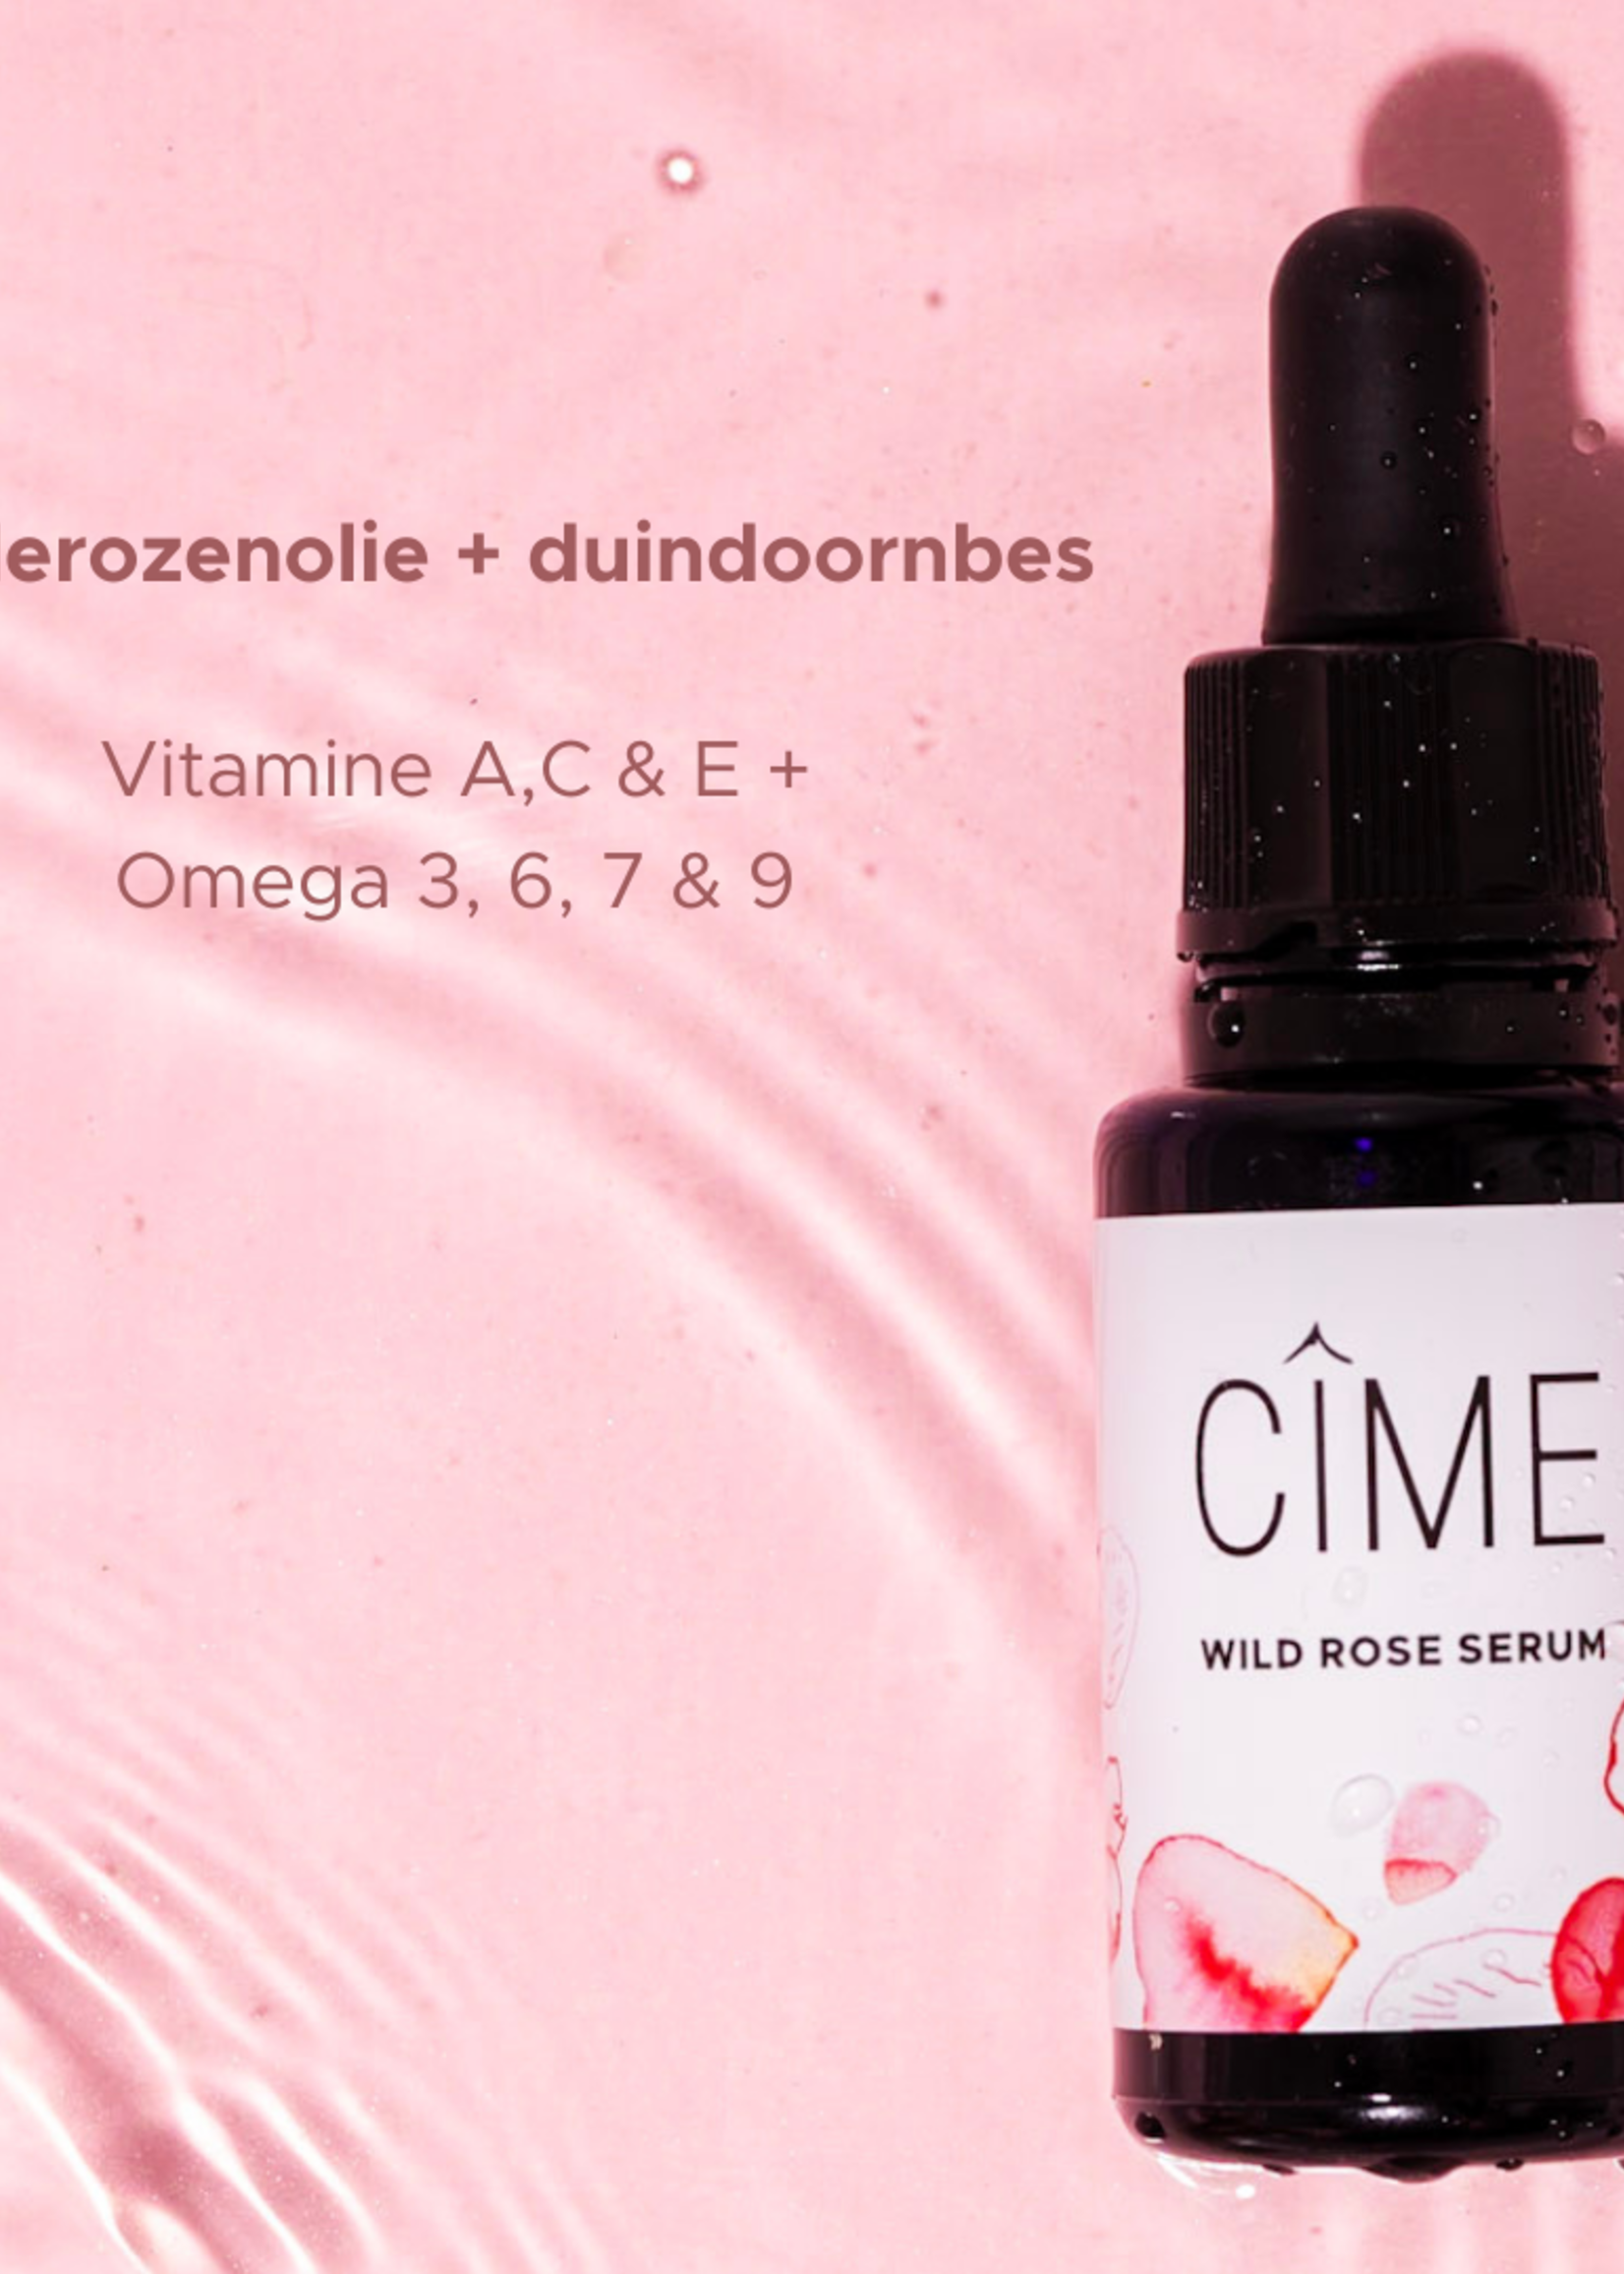 Cîme Self-care face massage set | Wilde rozen serum + Gua sha